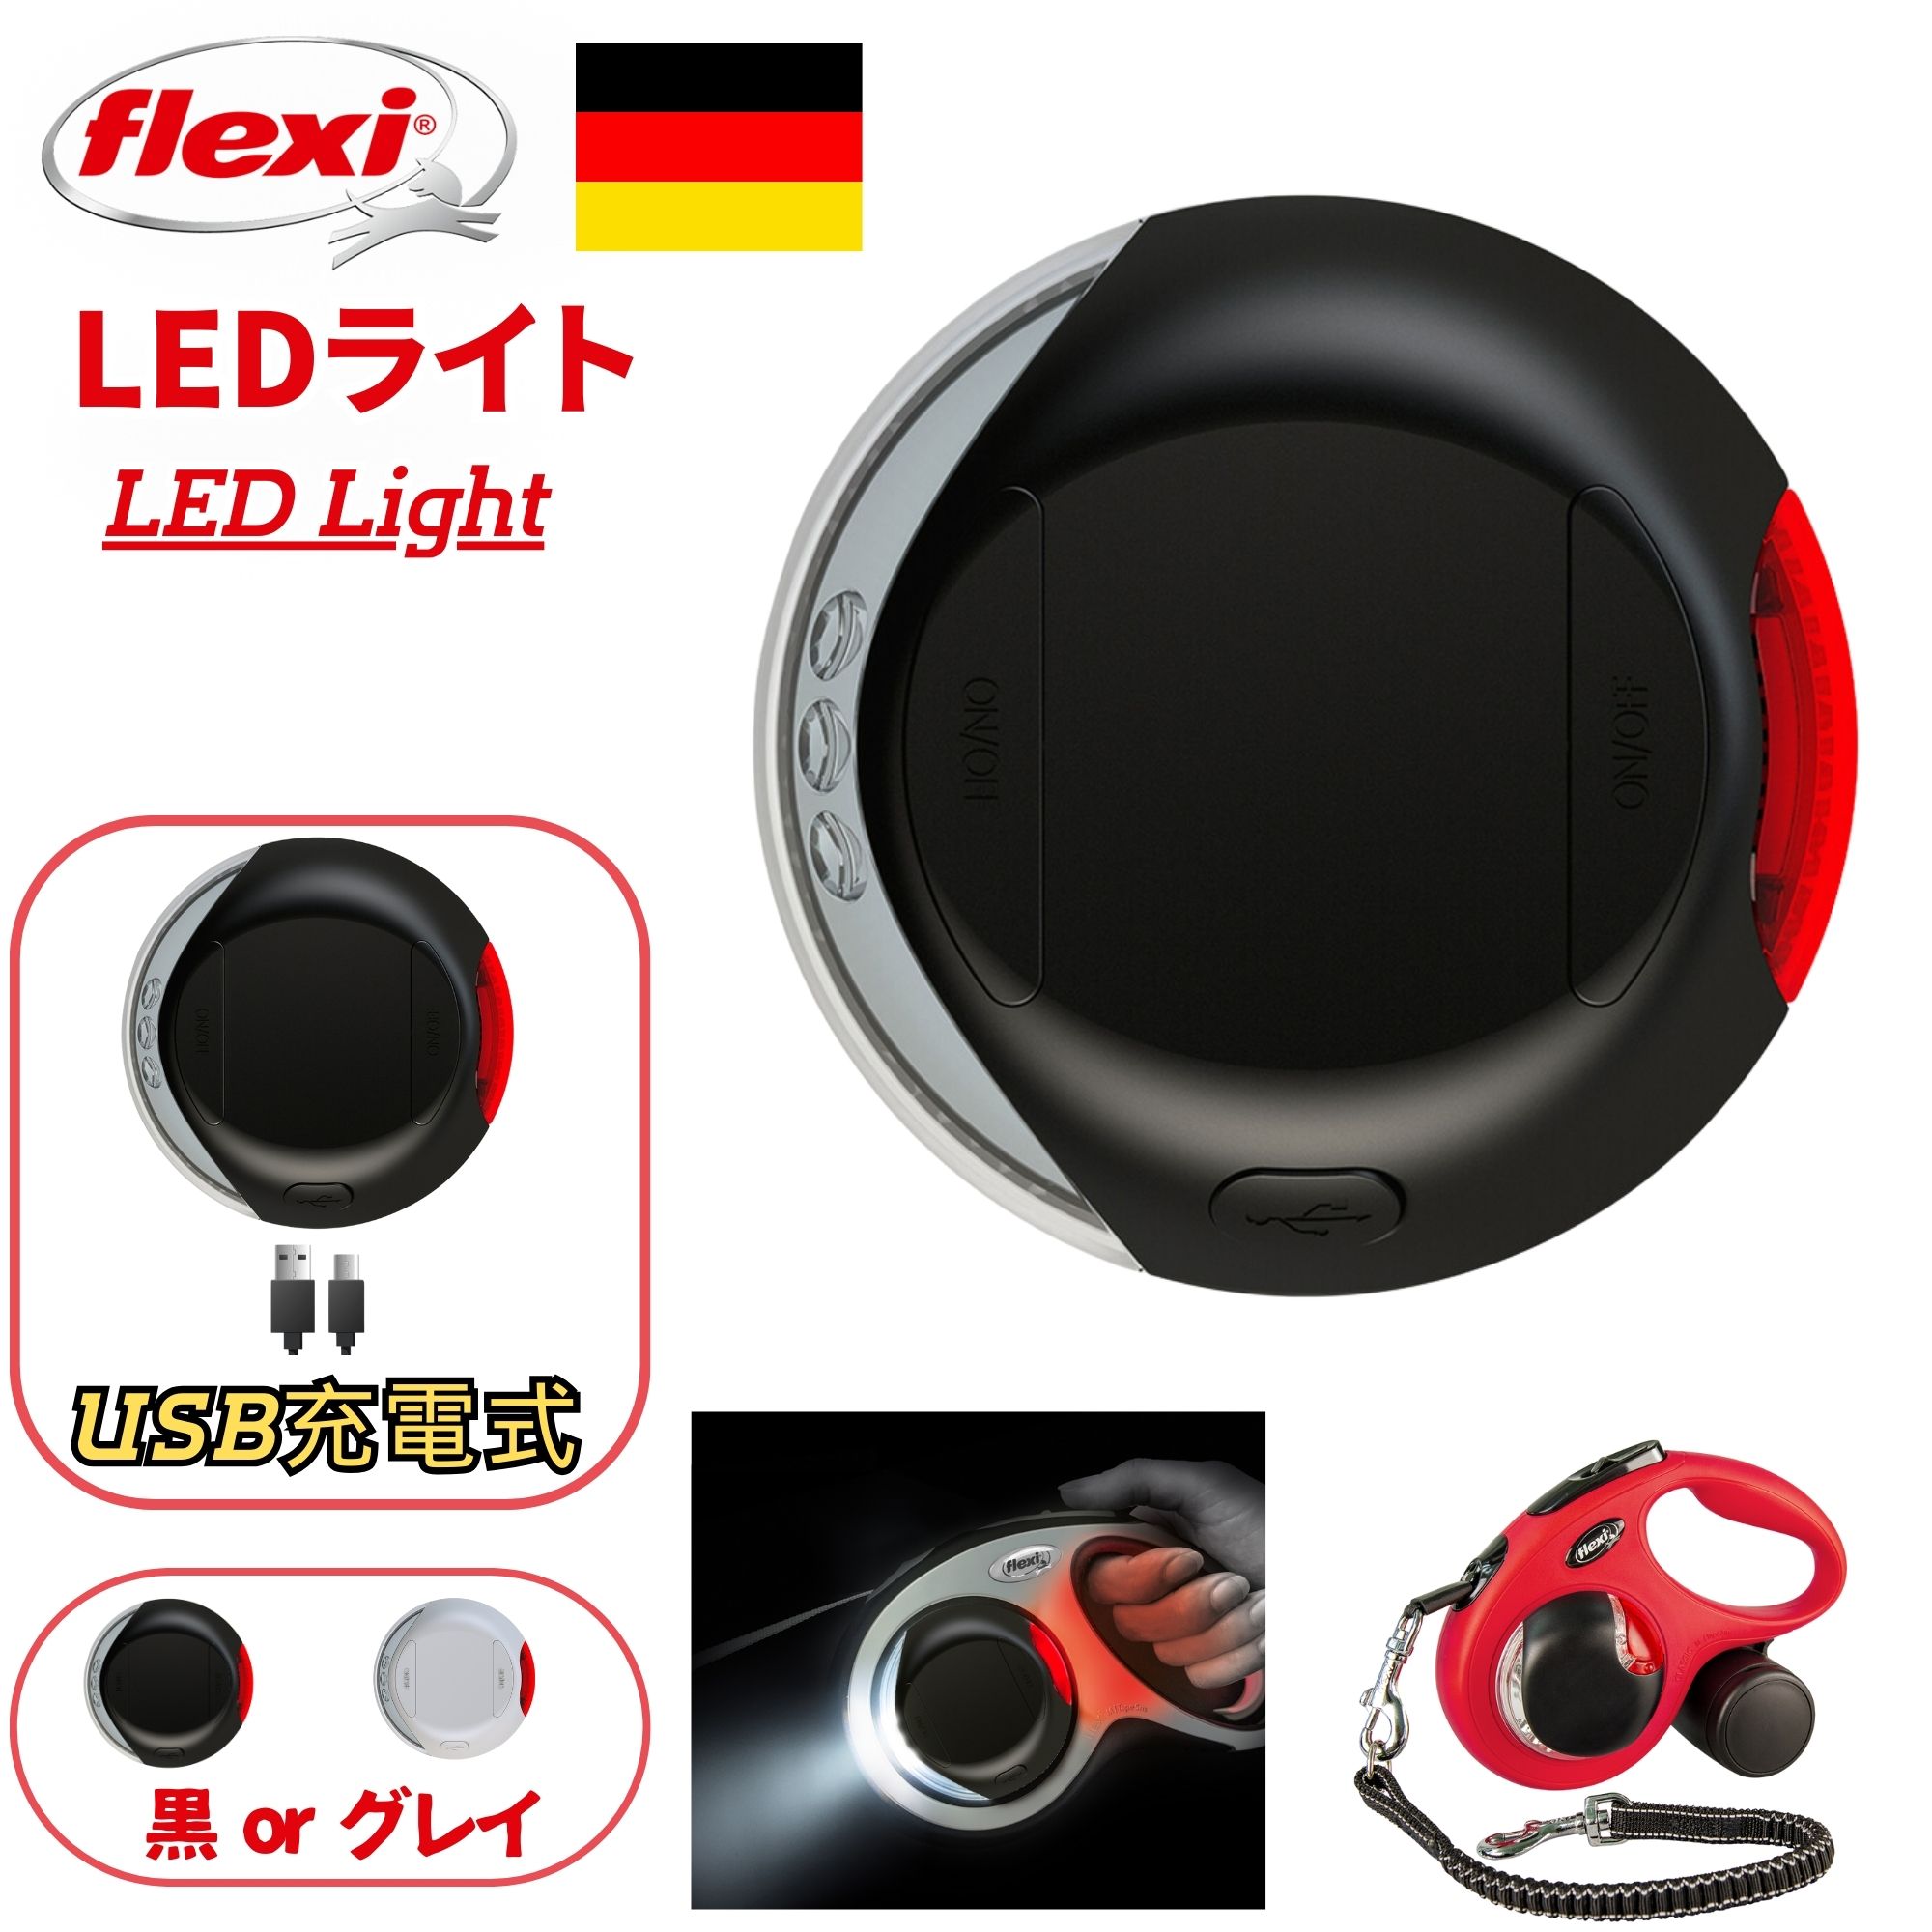 フレキシ LED ライト 2色 2段階調整 点滅機能有り ブラック グレイ Flexi LED Light Black Gray ドイツ 便利 明るい